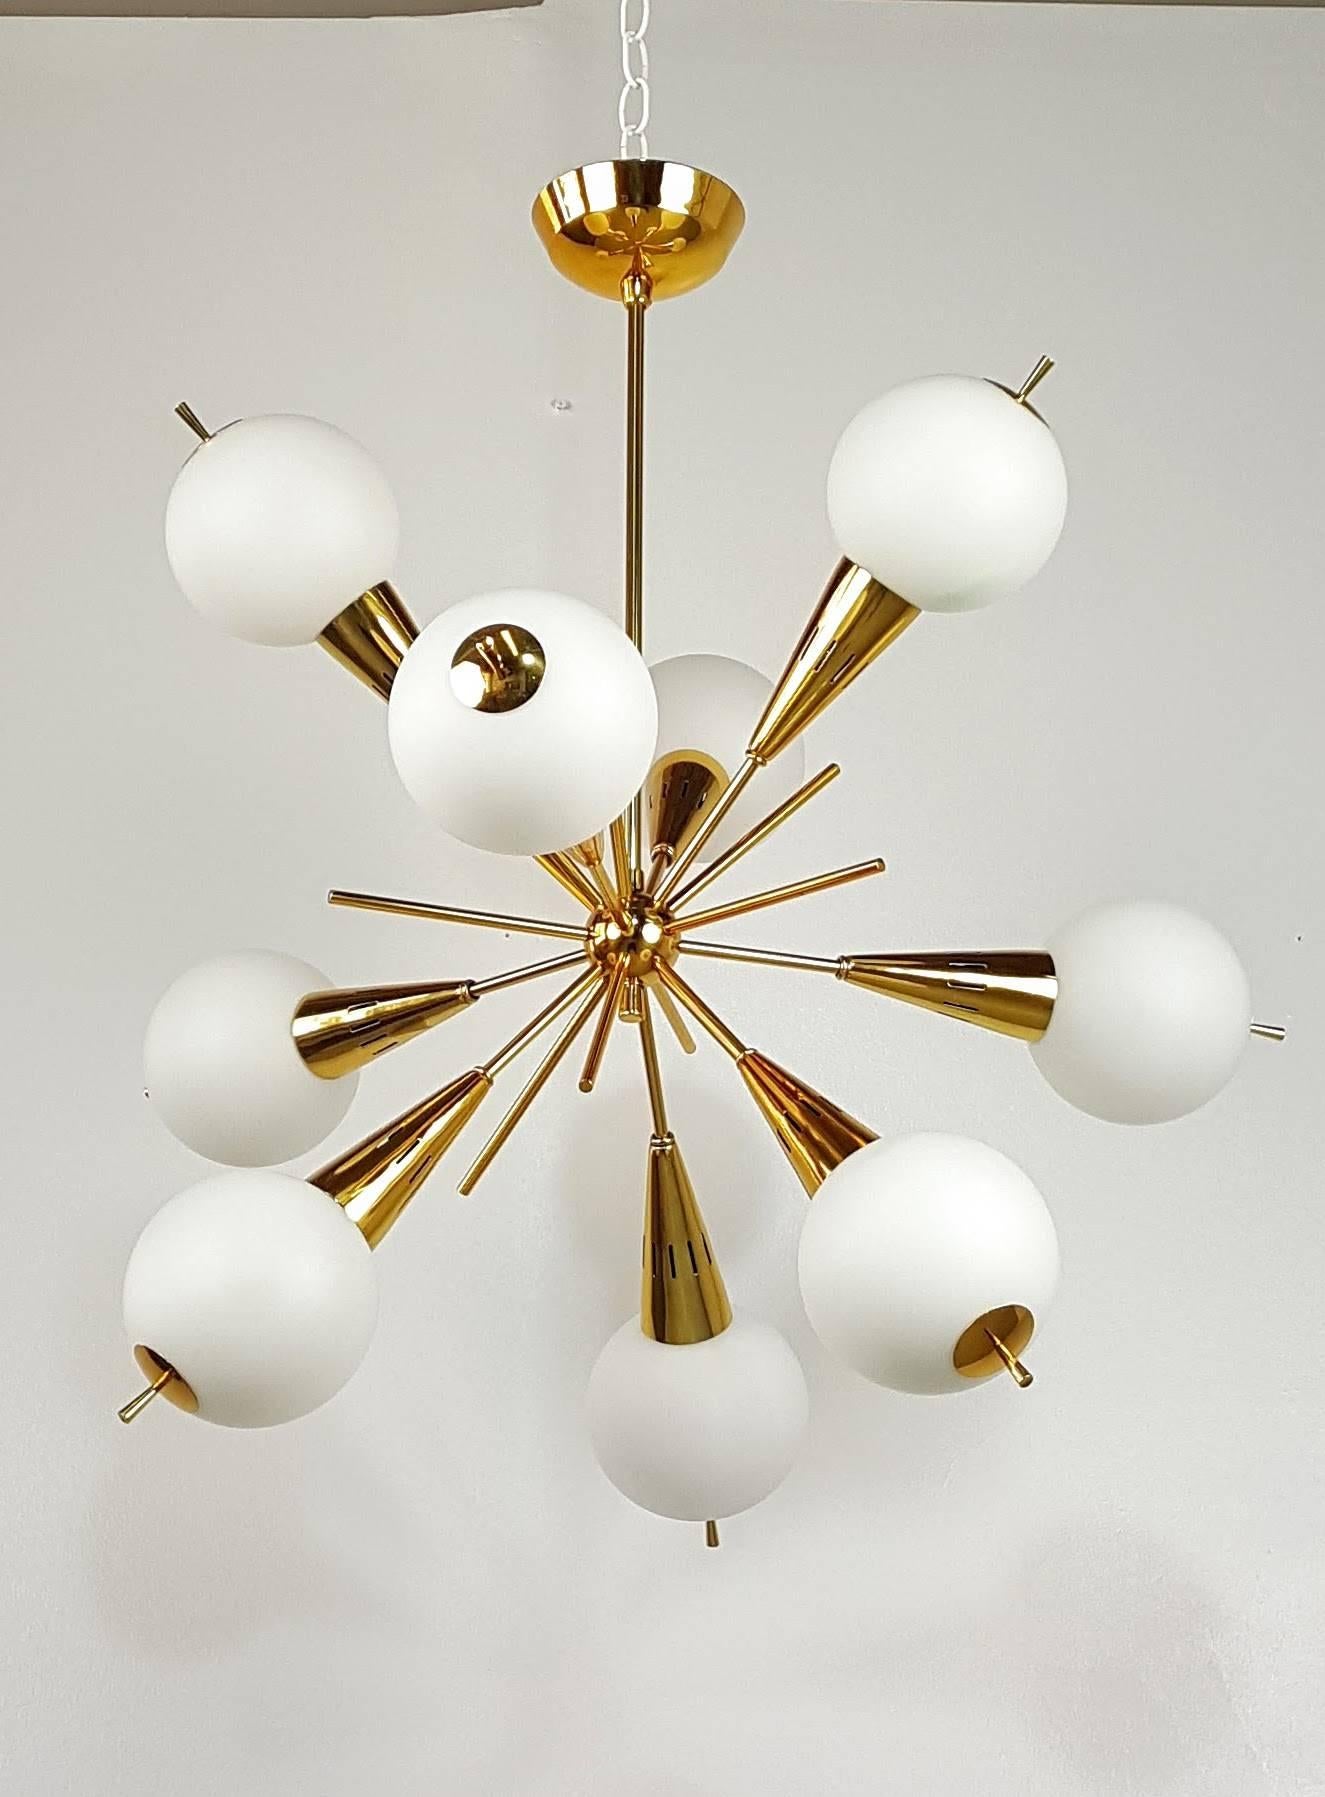 Italian Stunning Nine-Globe Sputnik Chandelier Attributed to Stilnovo, Italy, 1950s